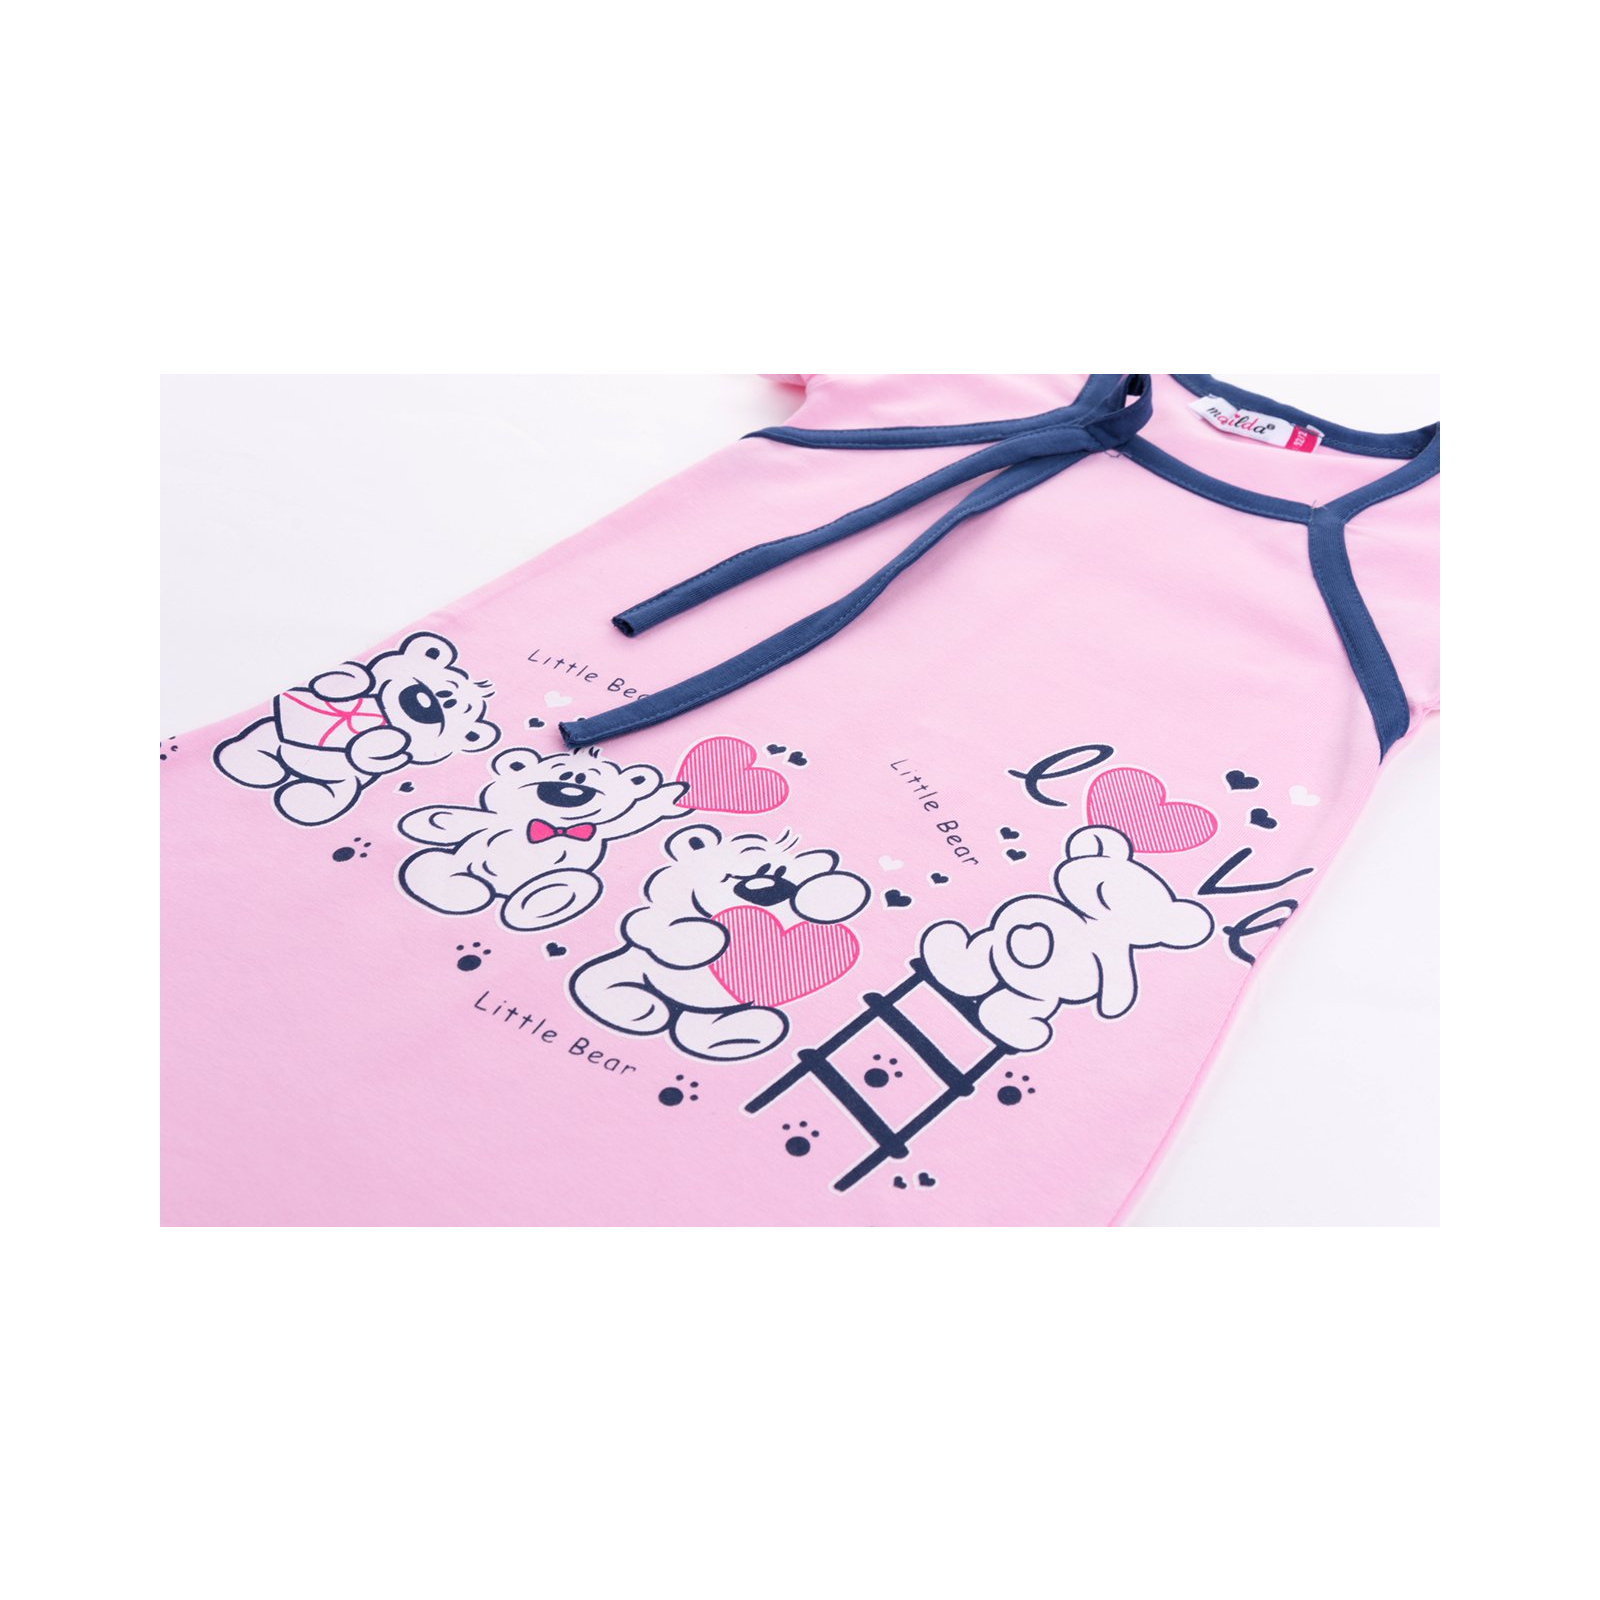 Пижама Matilda и халат с мишками "Love" (7445-128G-pink) изображение 8